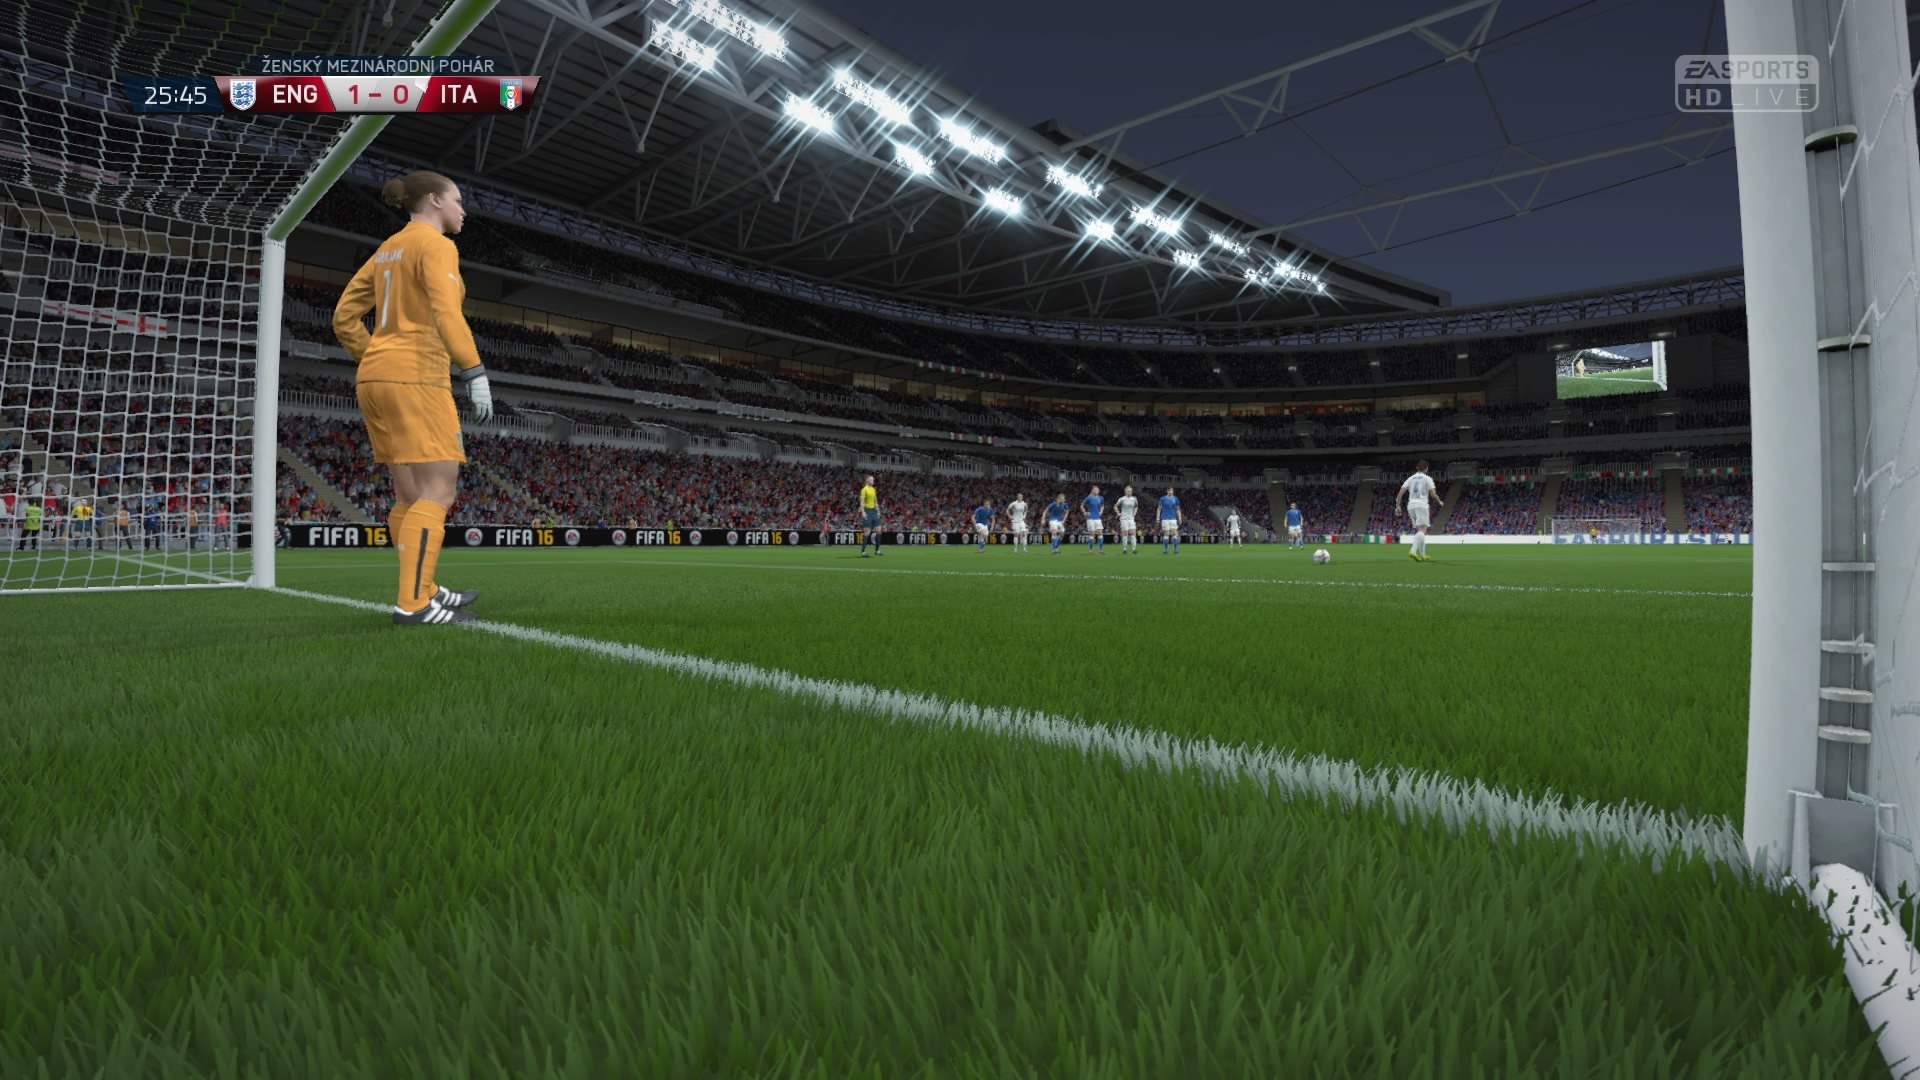 FIFA 16 Hra op oslov grafikou, ale aj atmosfrou na tadinoch.